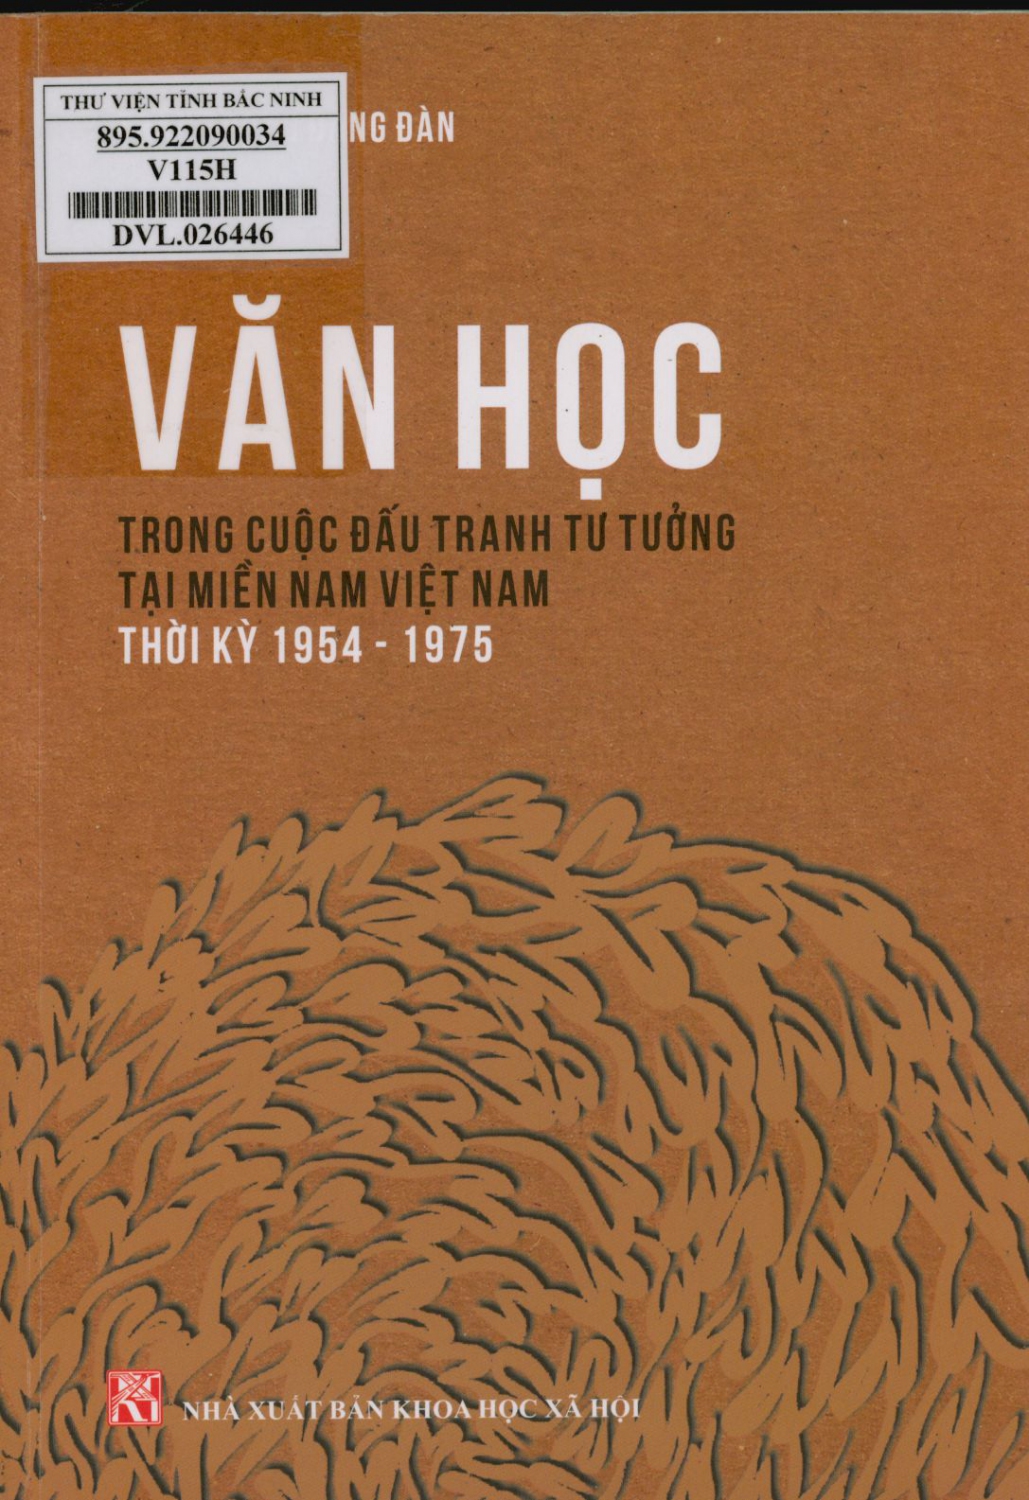 Văn học trong cuộc đấu tranh tư tưởng tại miền Nam Việt Nam thời kỳ 1954-1975